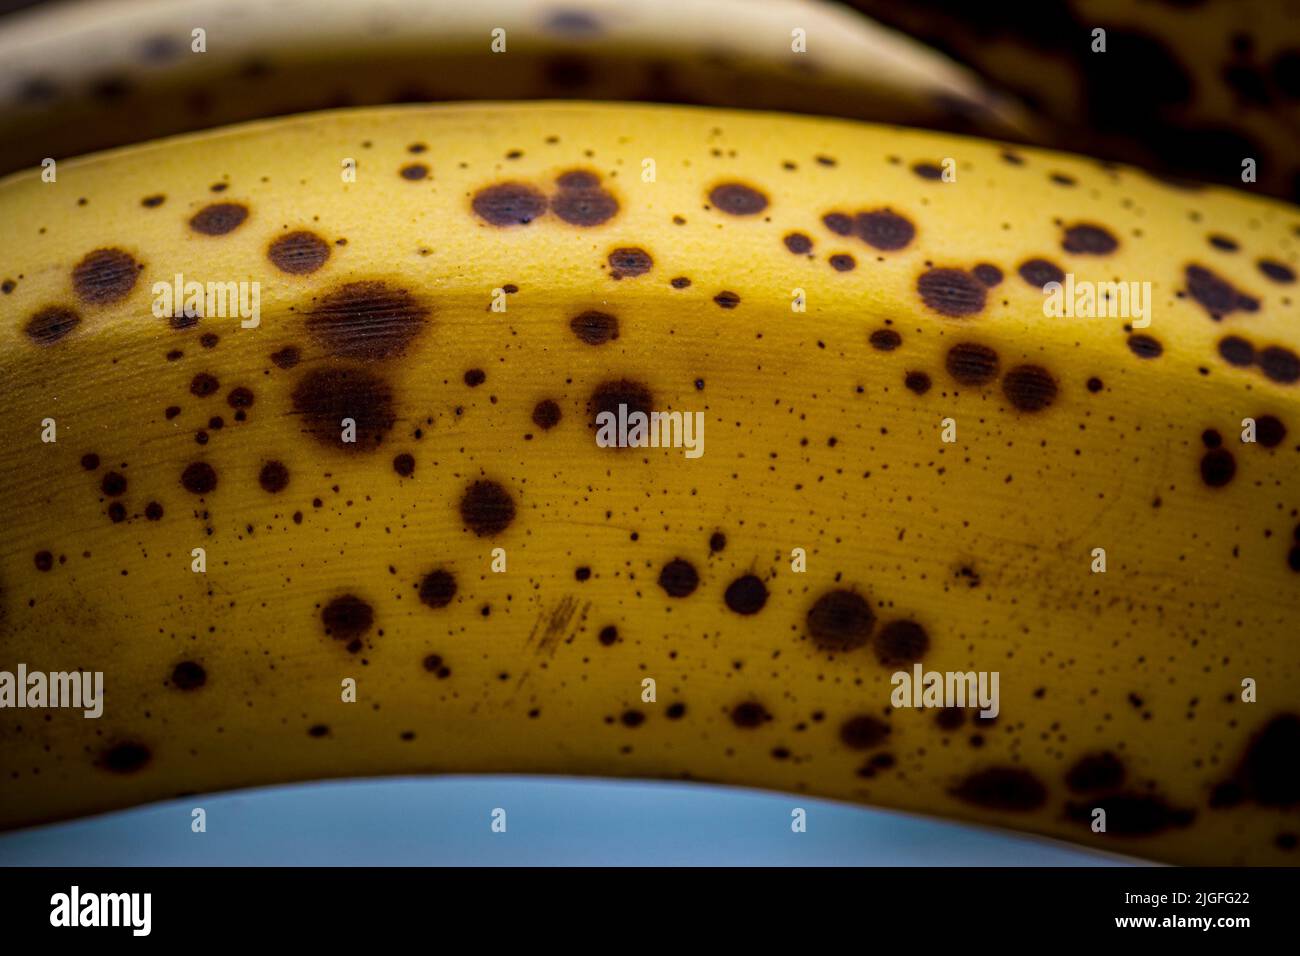 Nahaufnahme der Bananenreifephase mit Flecken, süßem Geschmack, perfekt für Mixgetränke und Backen Stockfoto